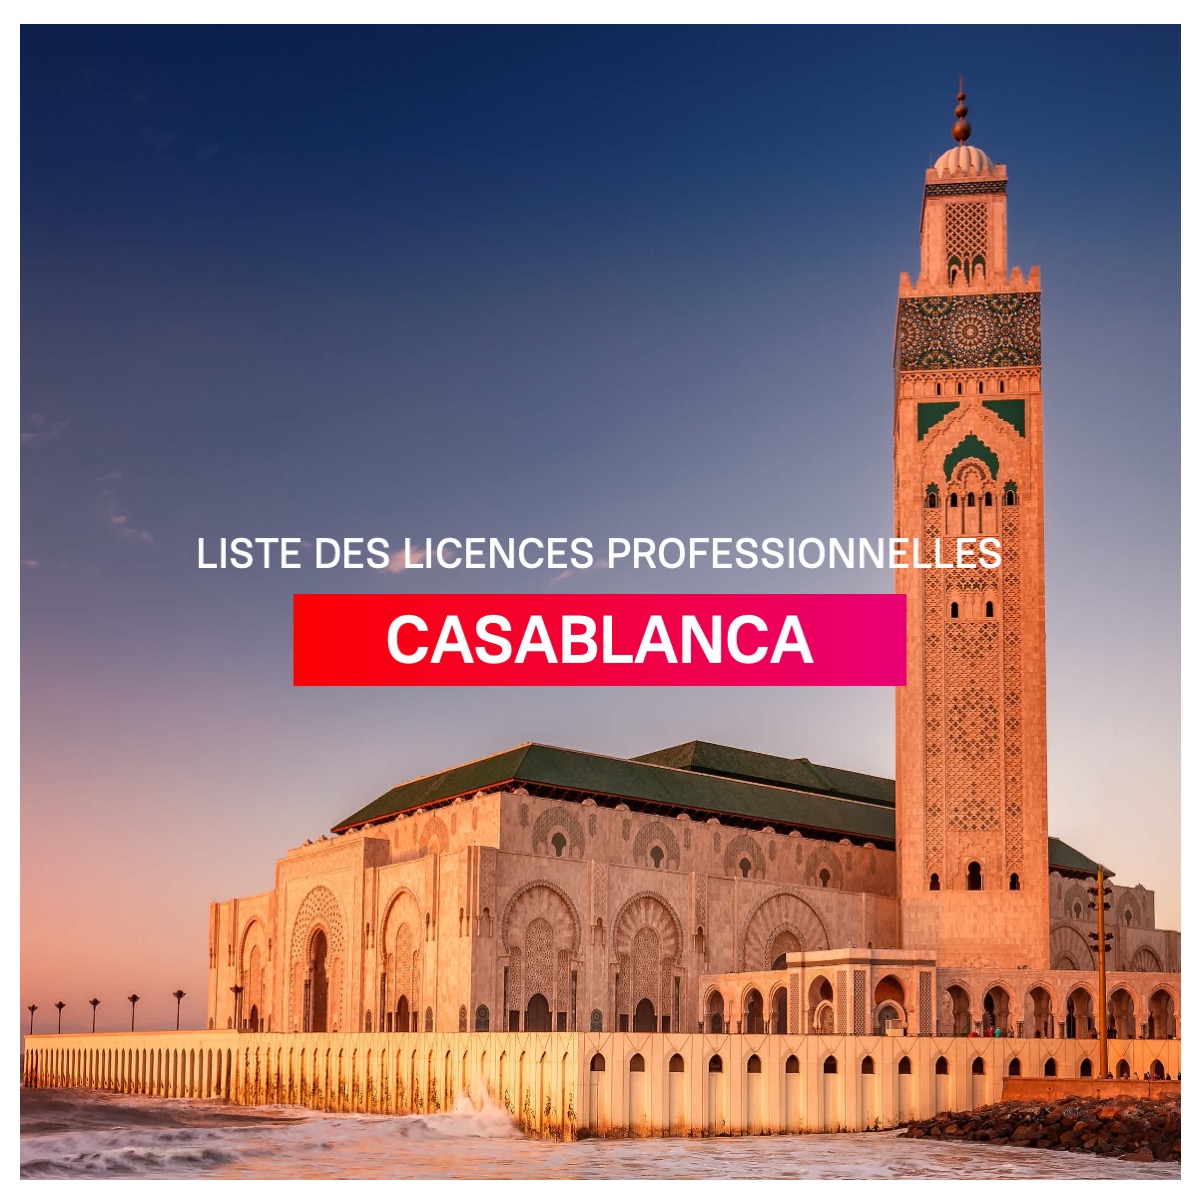 Liste des licences professionnelles à Casablanca